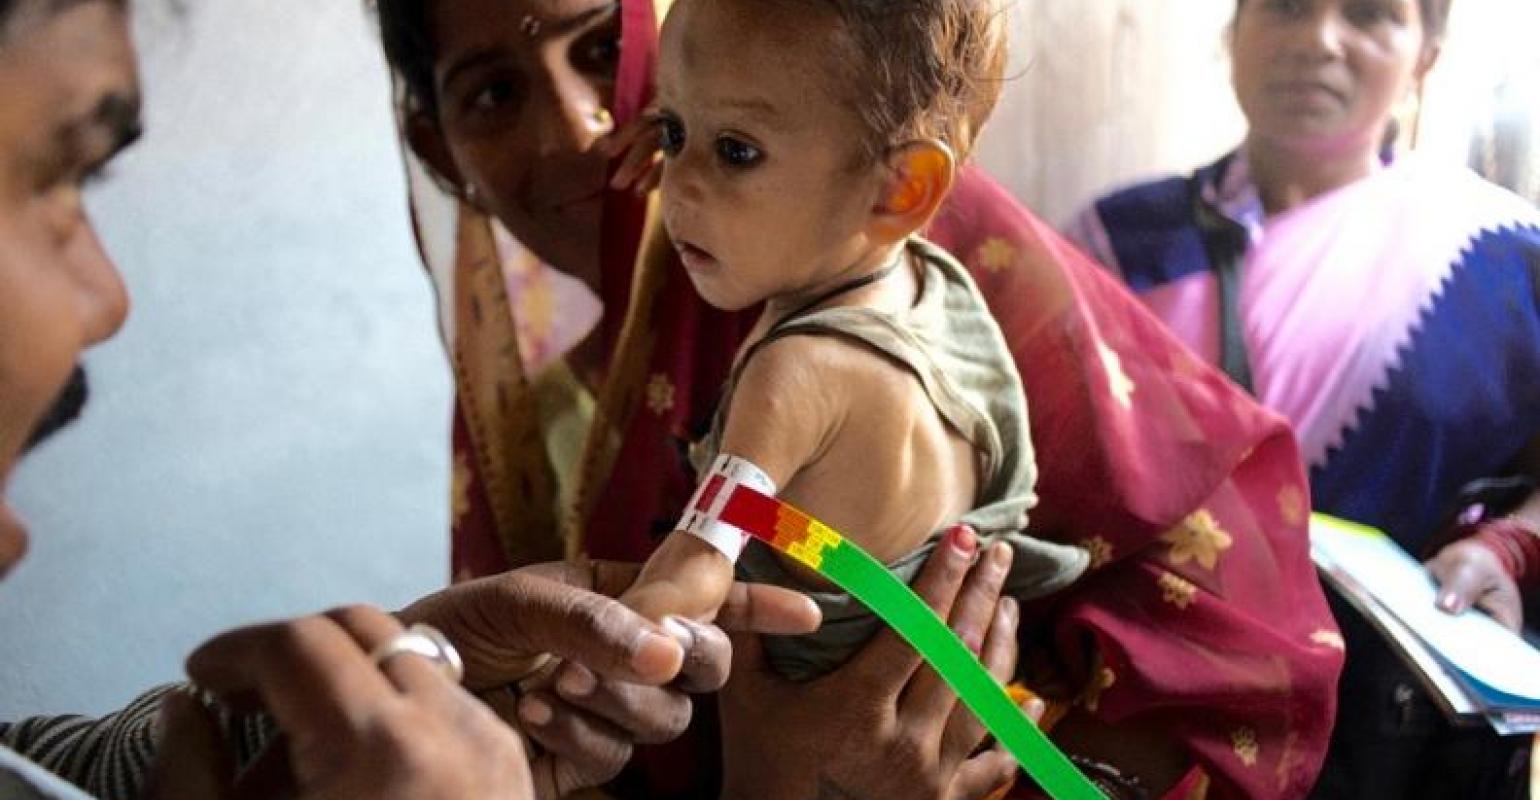 Un bambino magrissimo in braccio alla mamma mentre gli viene misurata la circonferenza del braccio. Malnutrizione